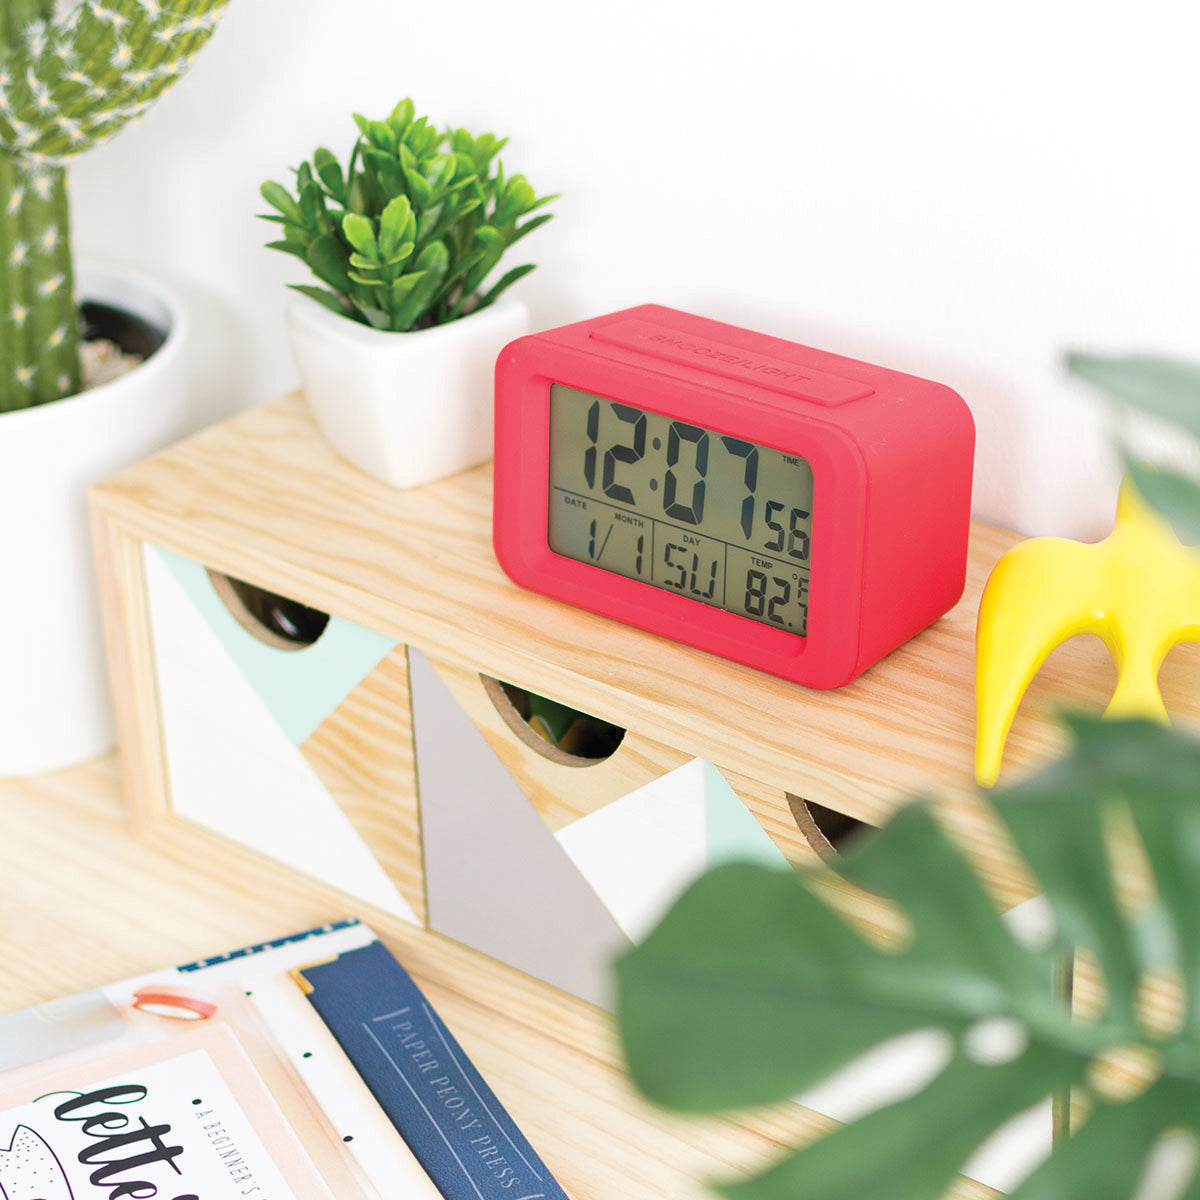 Reloj despertador digital Rojo